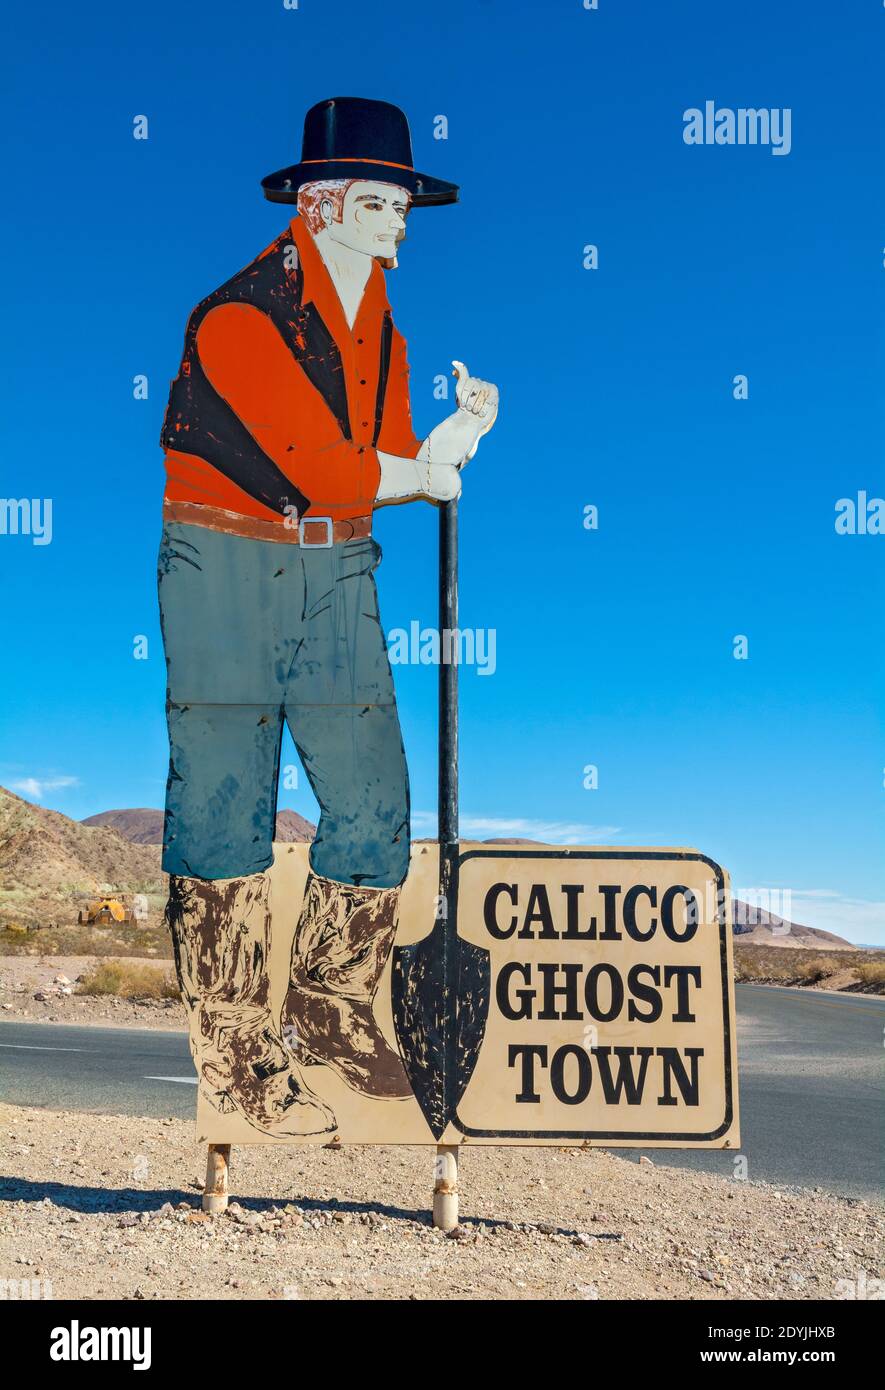 Californie, comté de San Bernardino, Calico Ghost Town, fondée en 1881 comme ville minière d'argent, panneau d'entrée Banque D'Images